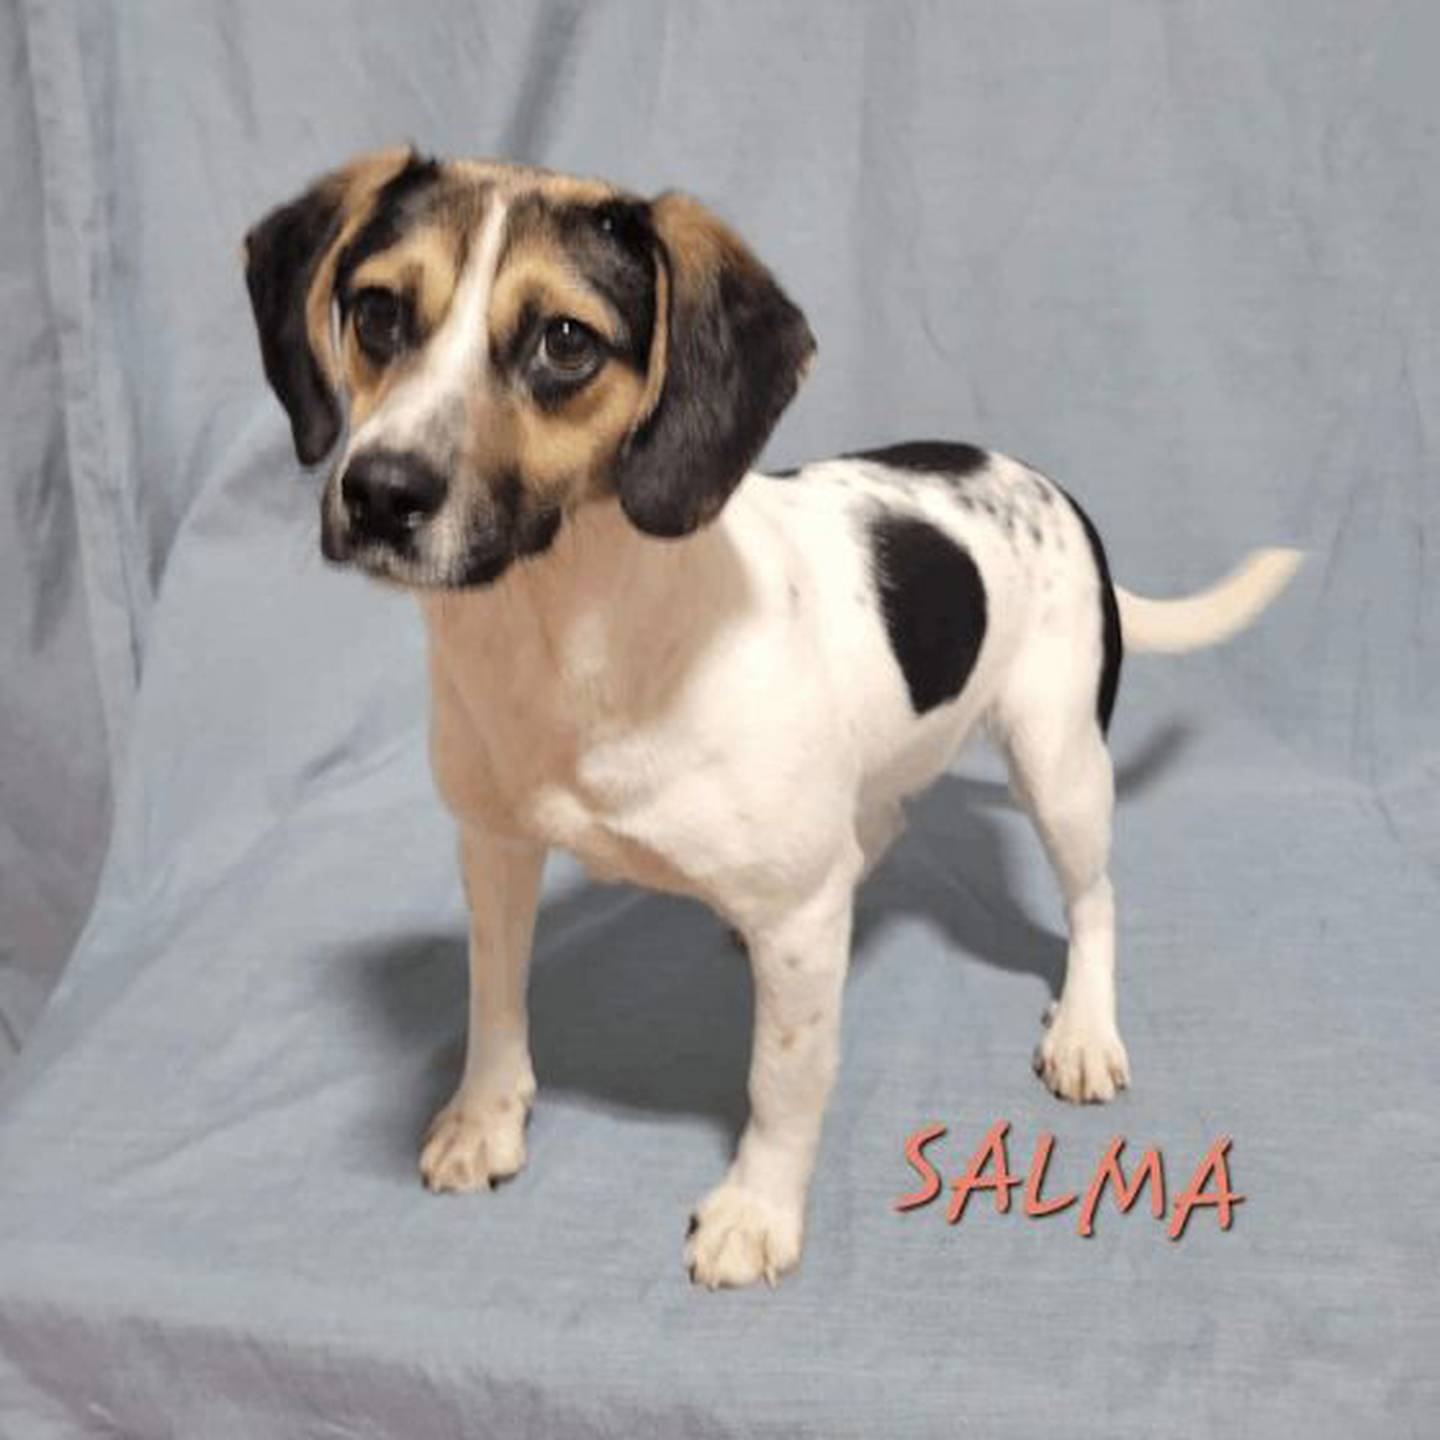 Salma El Helwa, âgée d'un an, pèse 21,8 livres.  Elle adore courir et jouer avec d'autres jouets et chiens.  Pour rencontrer Selma, contactez Animal Rescue à Hopefultailsadoptions@outlook.com.  Visitez le site hopefultailsanimalrescue.org.